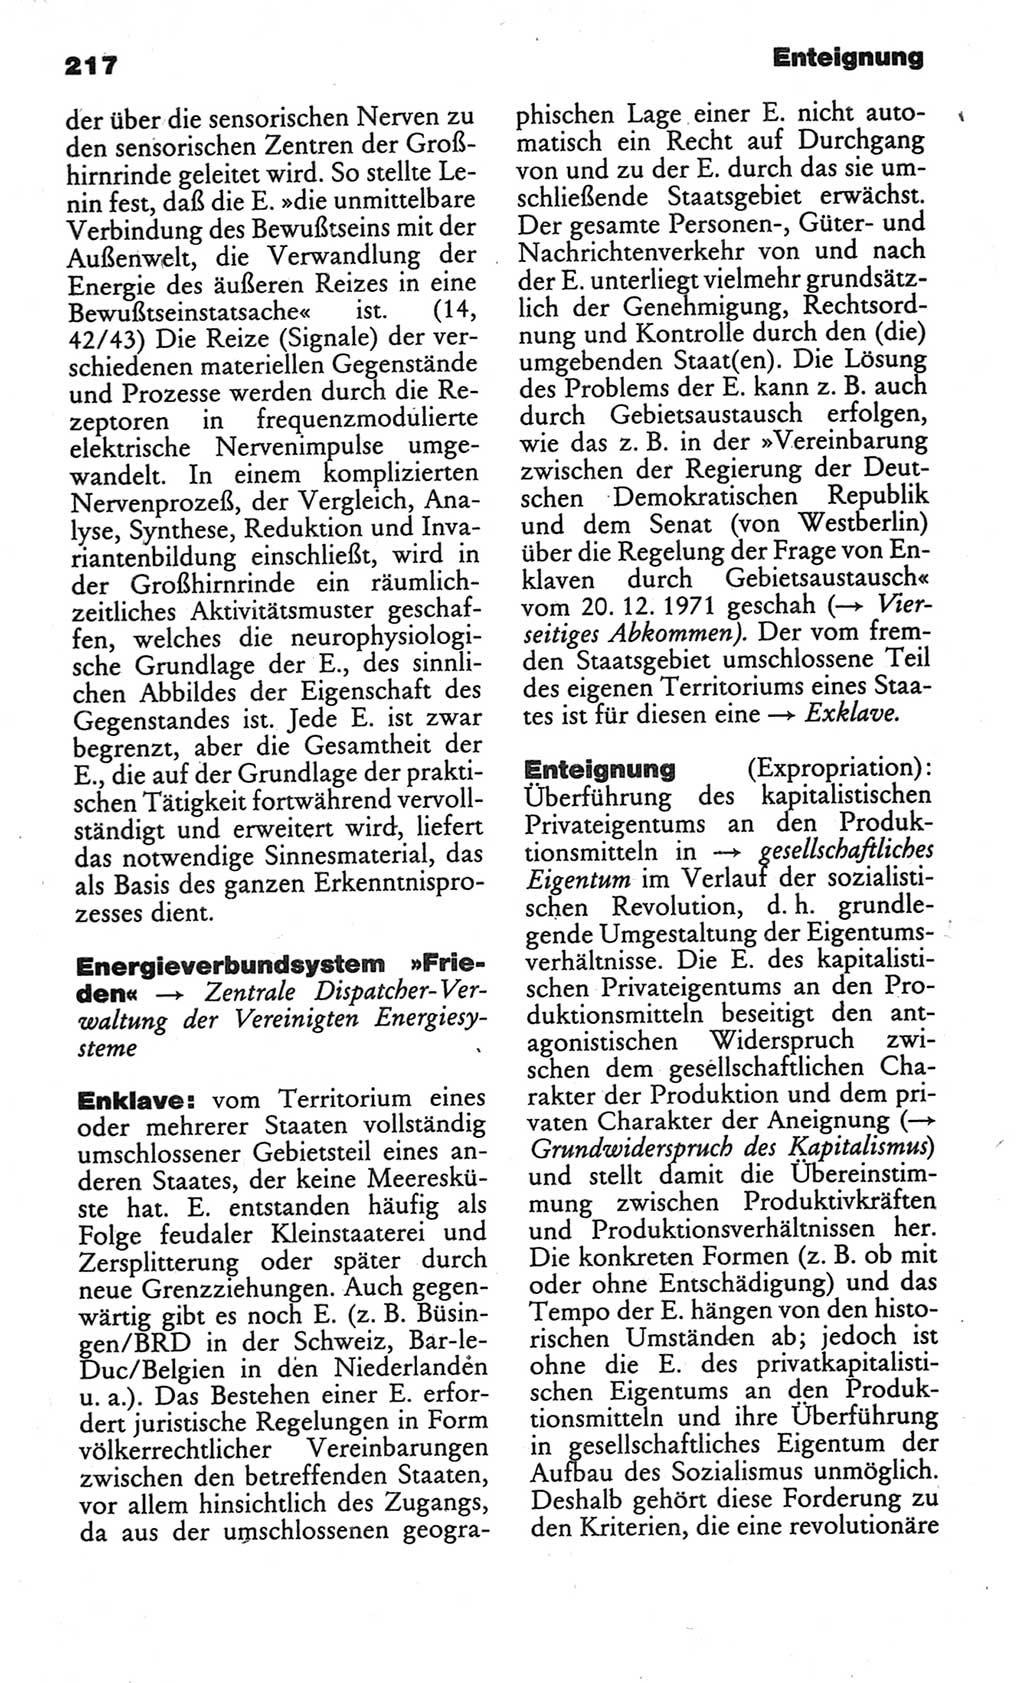 Kleines politisches Wörterbuch [Deutsche Demokratische Republik (DDR)] 1986, Seite 217 (Kl. pol. Wb. DDR 1986, S. 217)